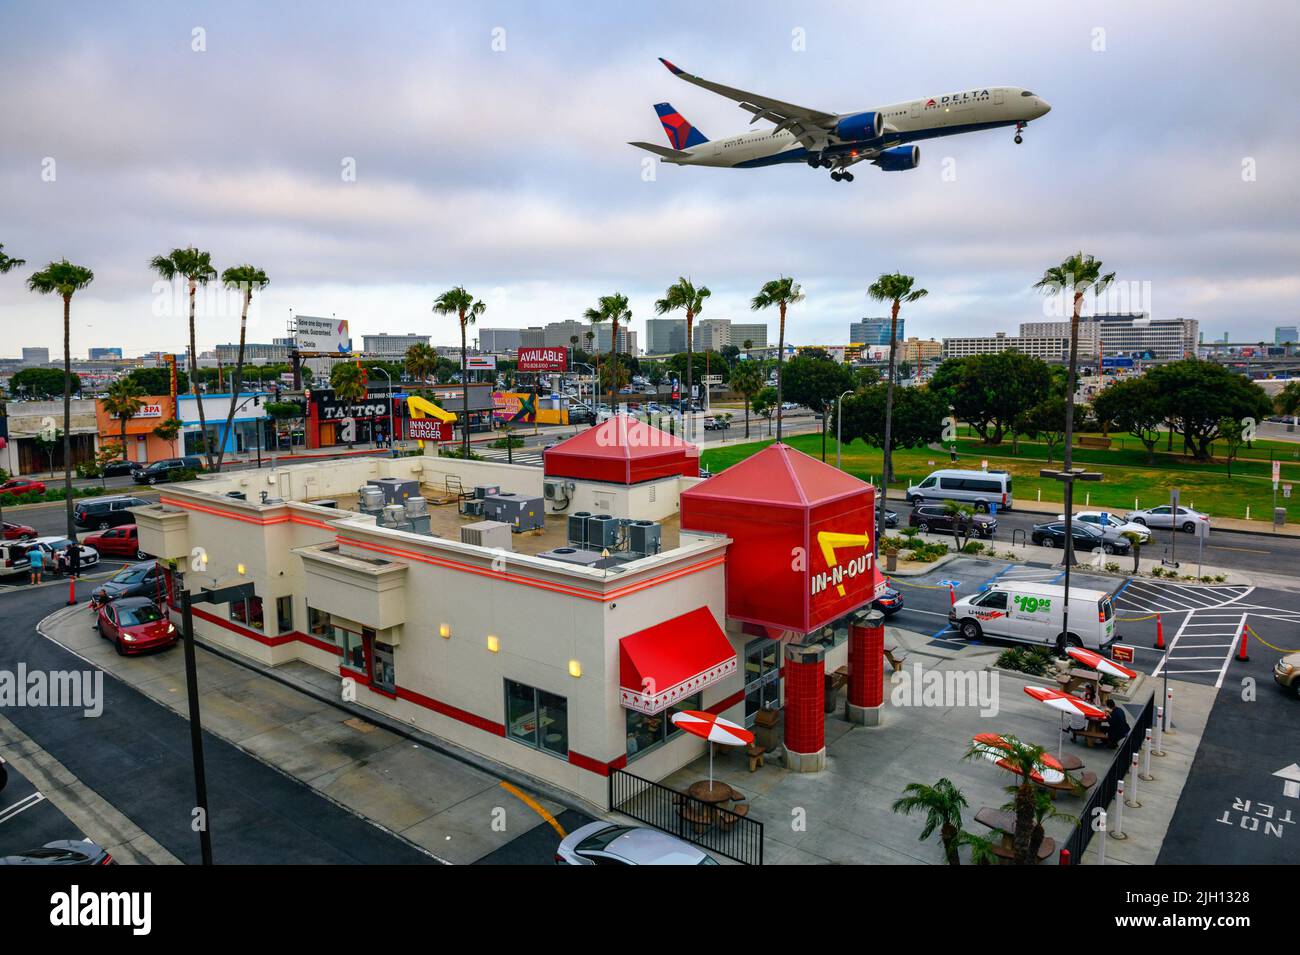 El avión de Delta Airlines sobrevuela el restaurante In-N-Out Burger mientras aterriza en el Aeropuerto Internacional de Los Ángeles LAX Foto de stock